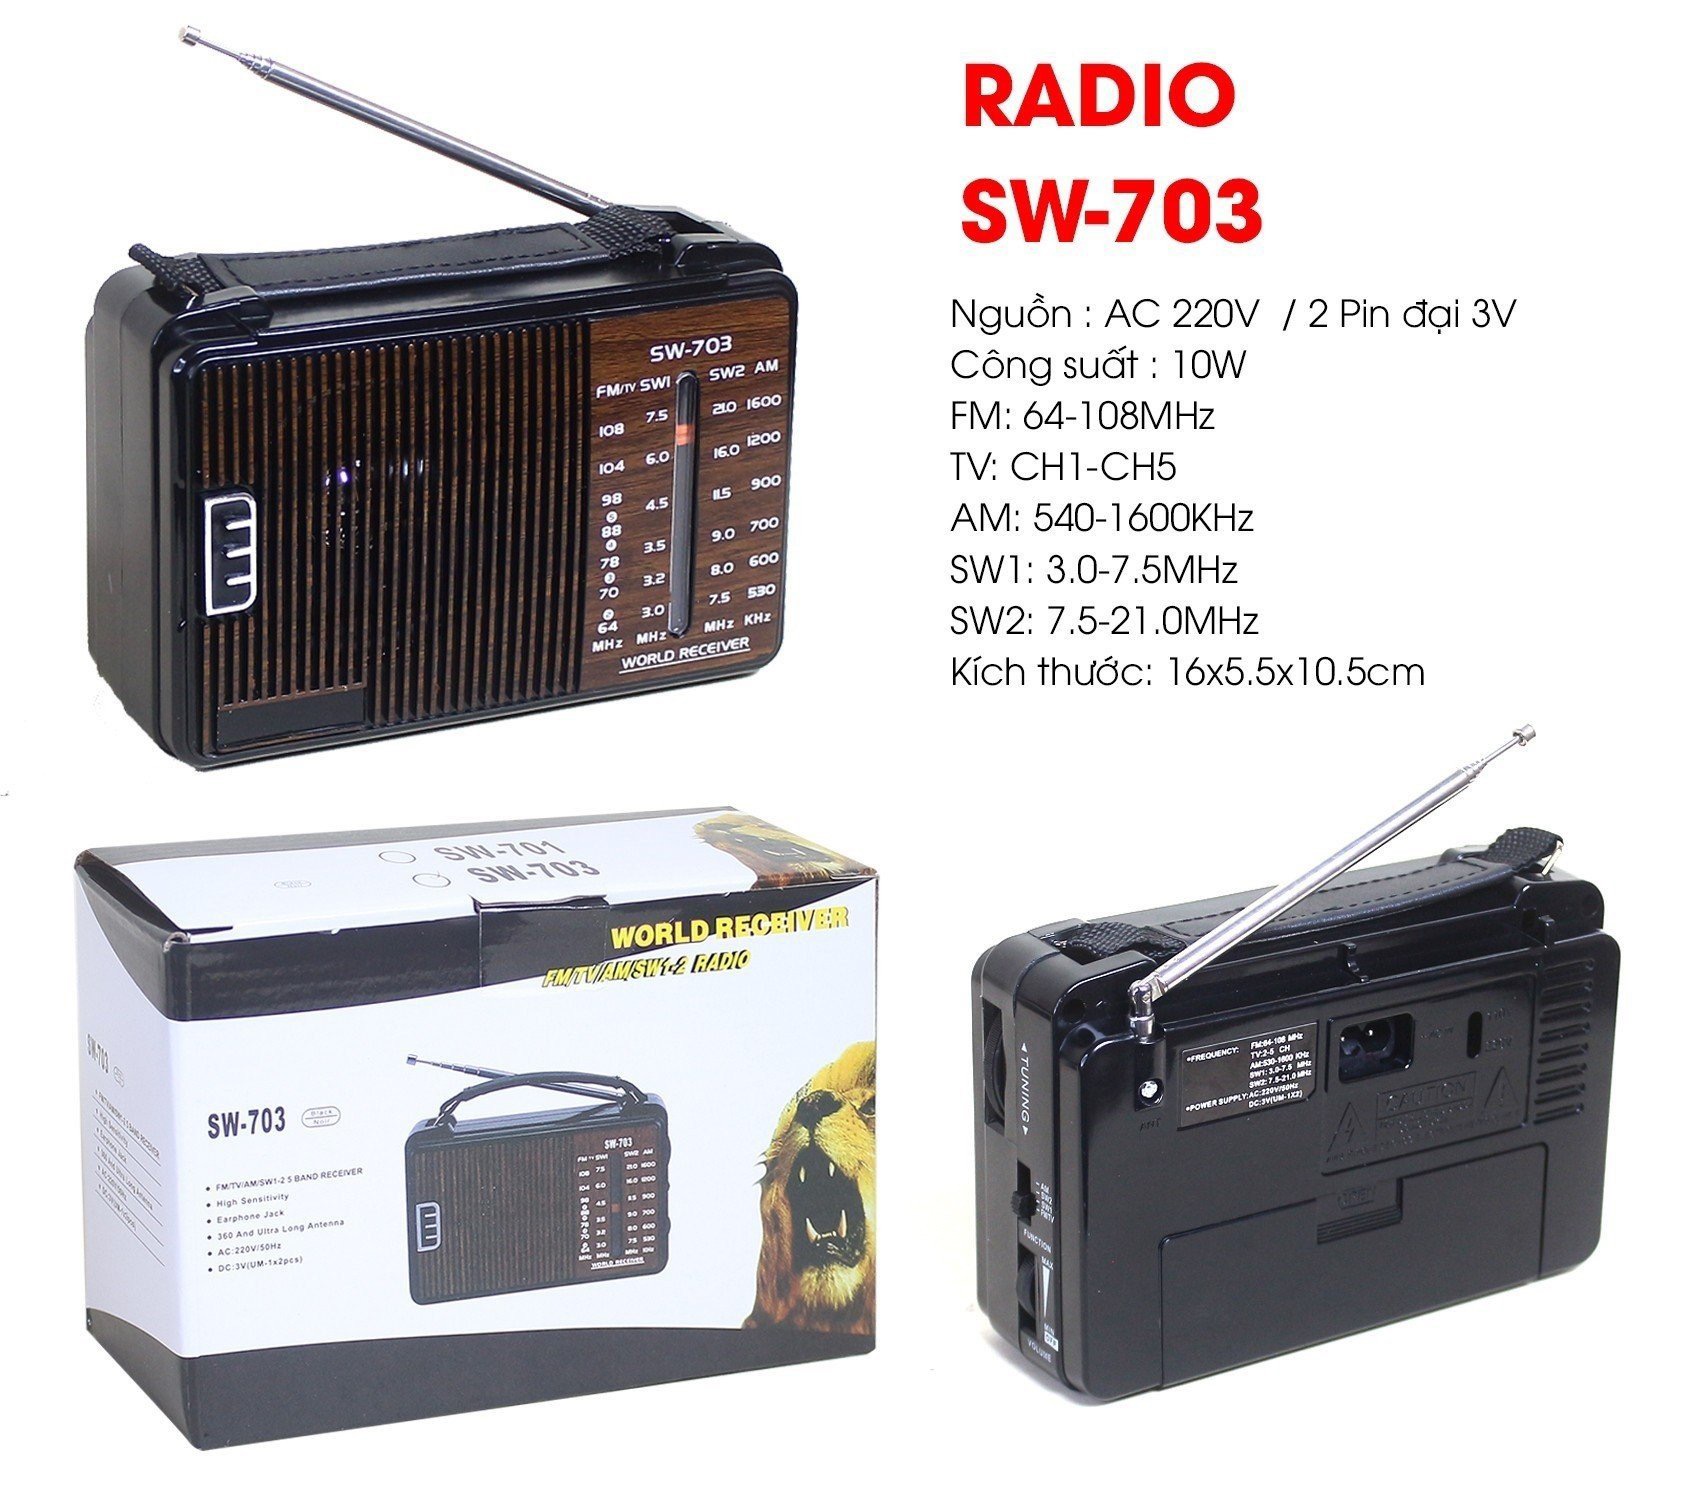 RADIO SW-703